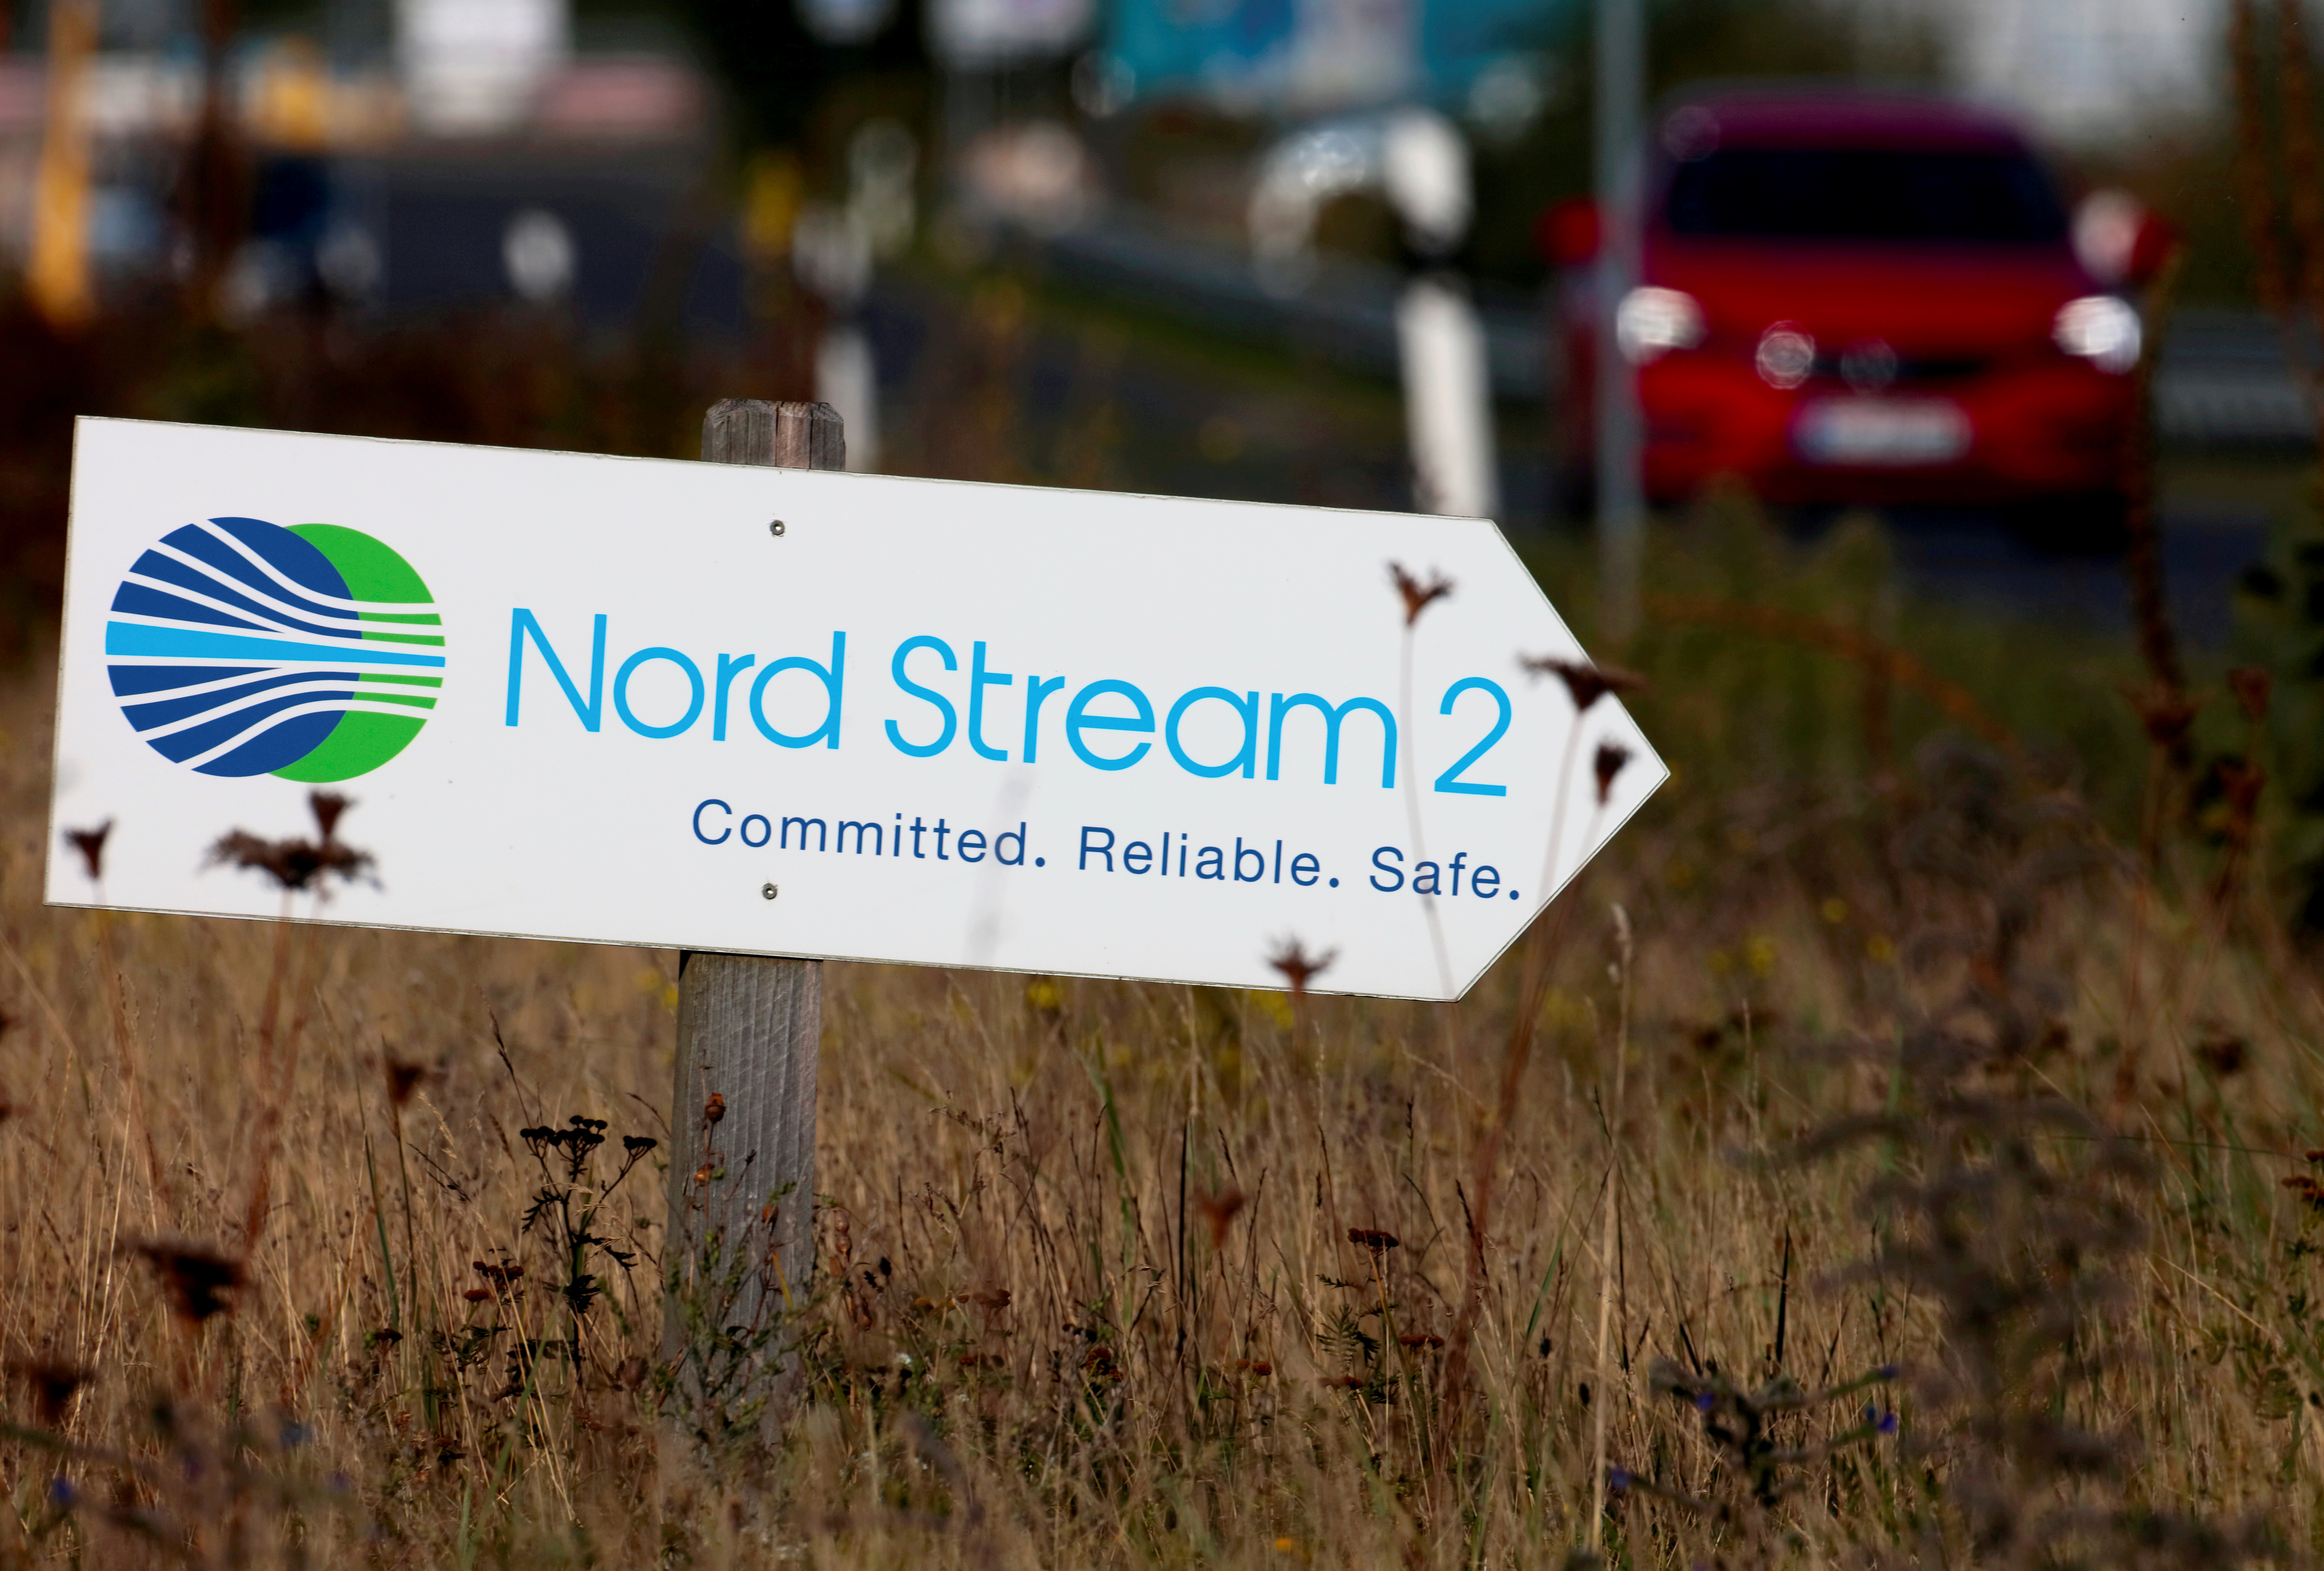 Una señal de carretera dirige el tráfico hacia la entrada de las instalaciones del gasoducto Nord Stream 2 en Lubmin, Alemania (REUTERS/Hannibal Hanschke)